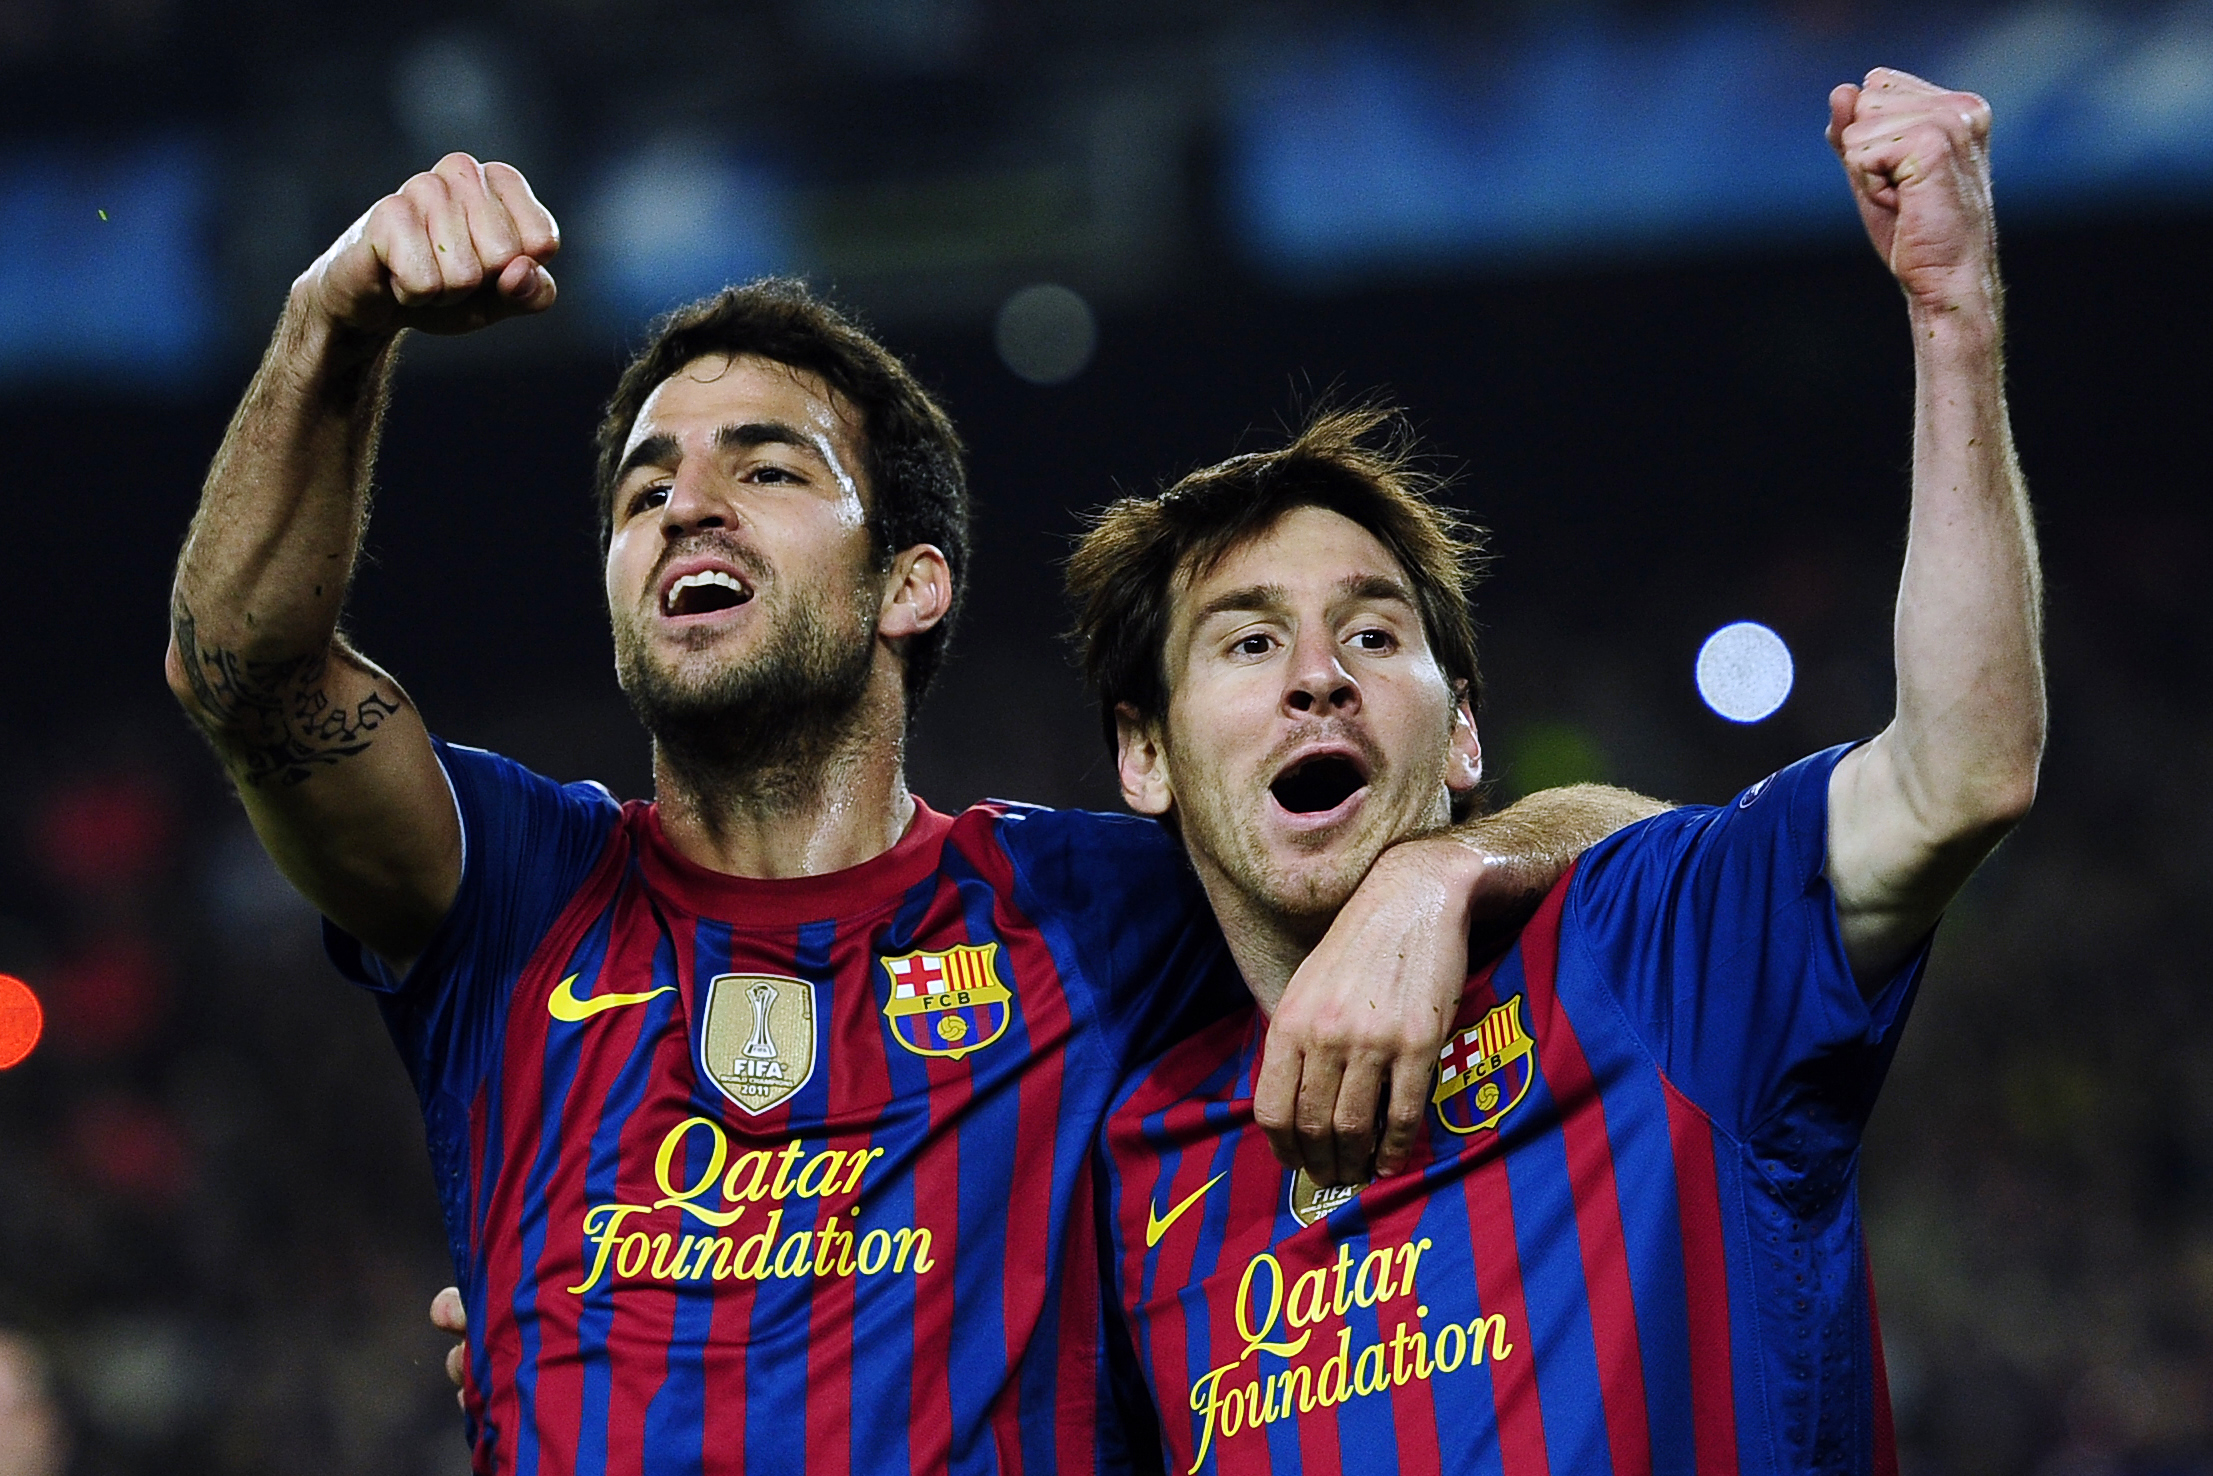 Barcelona-duon Cesc Fàbregas och Leo Messi är nominerade till priset.